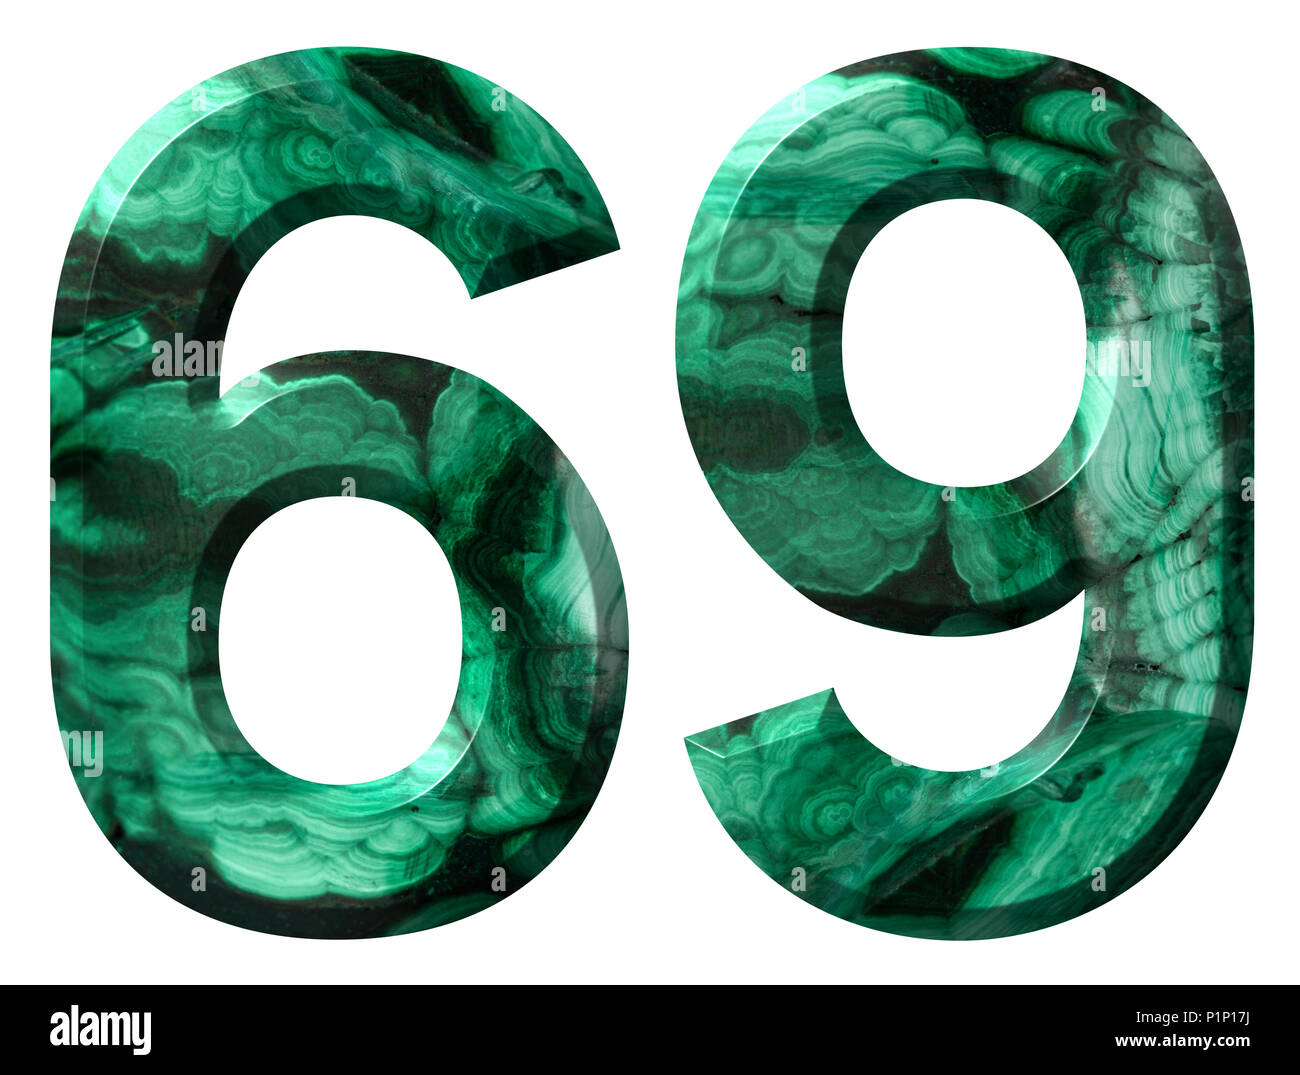 Numero arabo 69, sessanta nove, dal verde naturale malachite, isolati su sfondo bianco Foto Stock